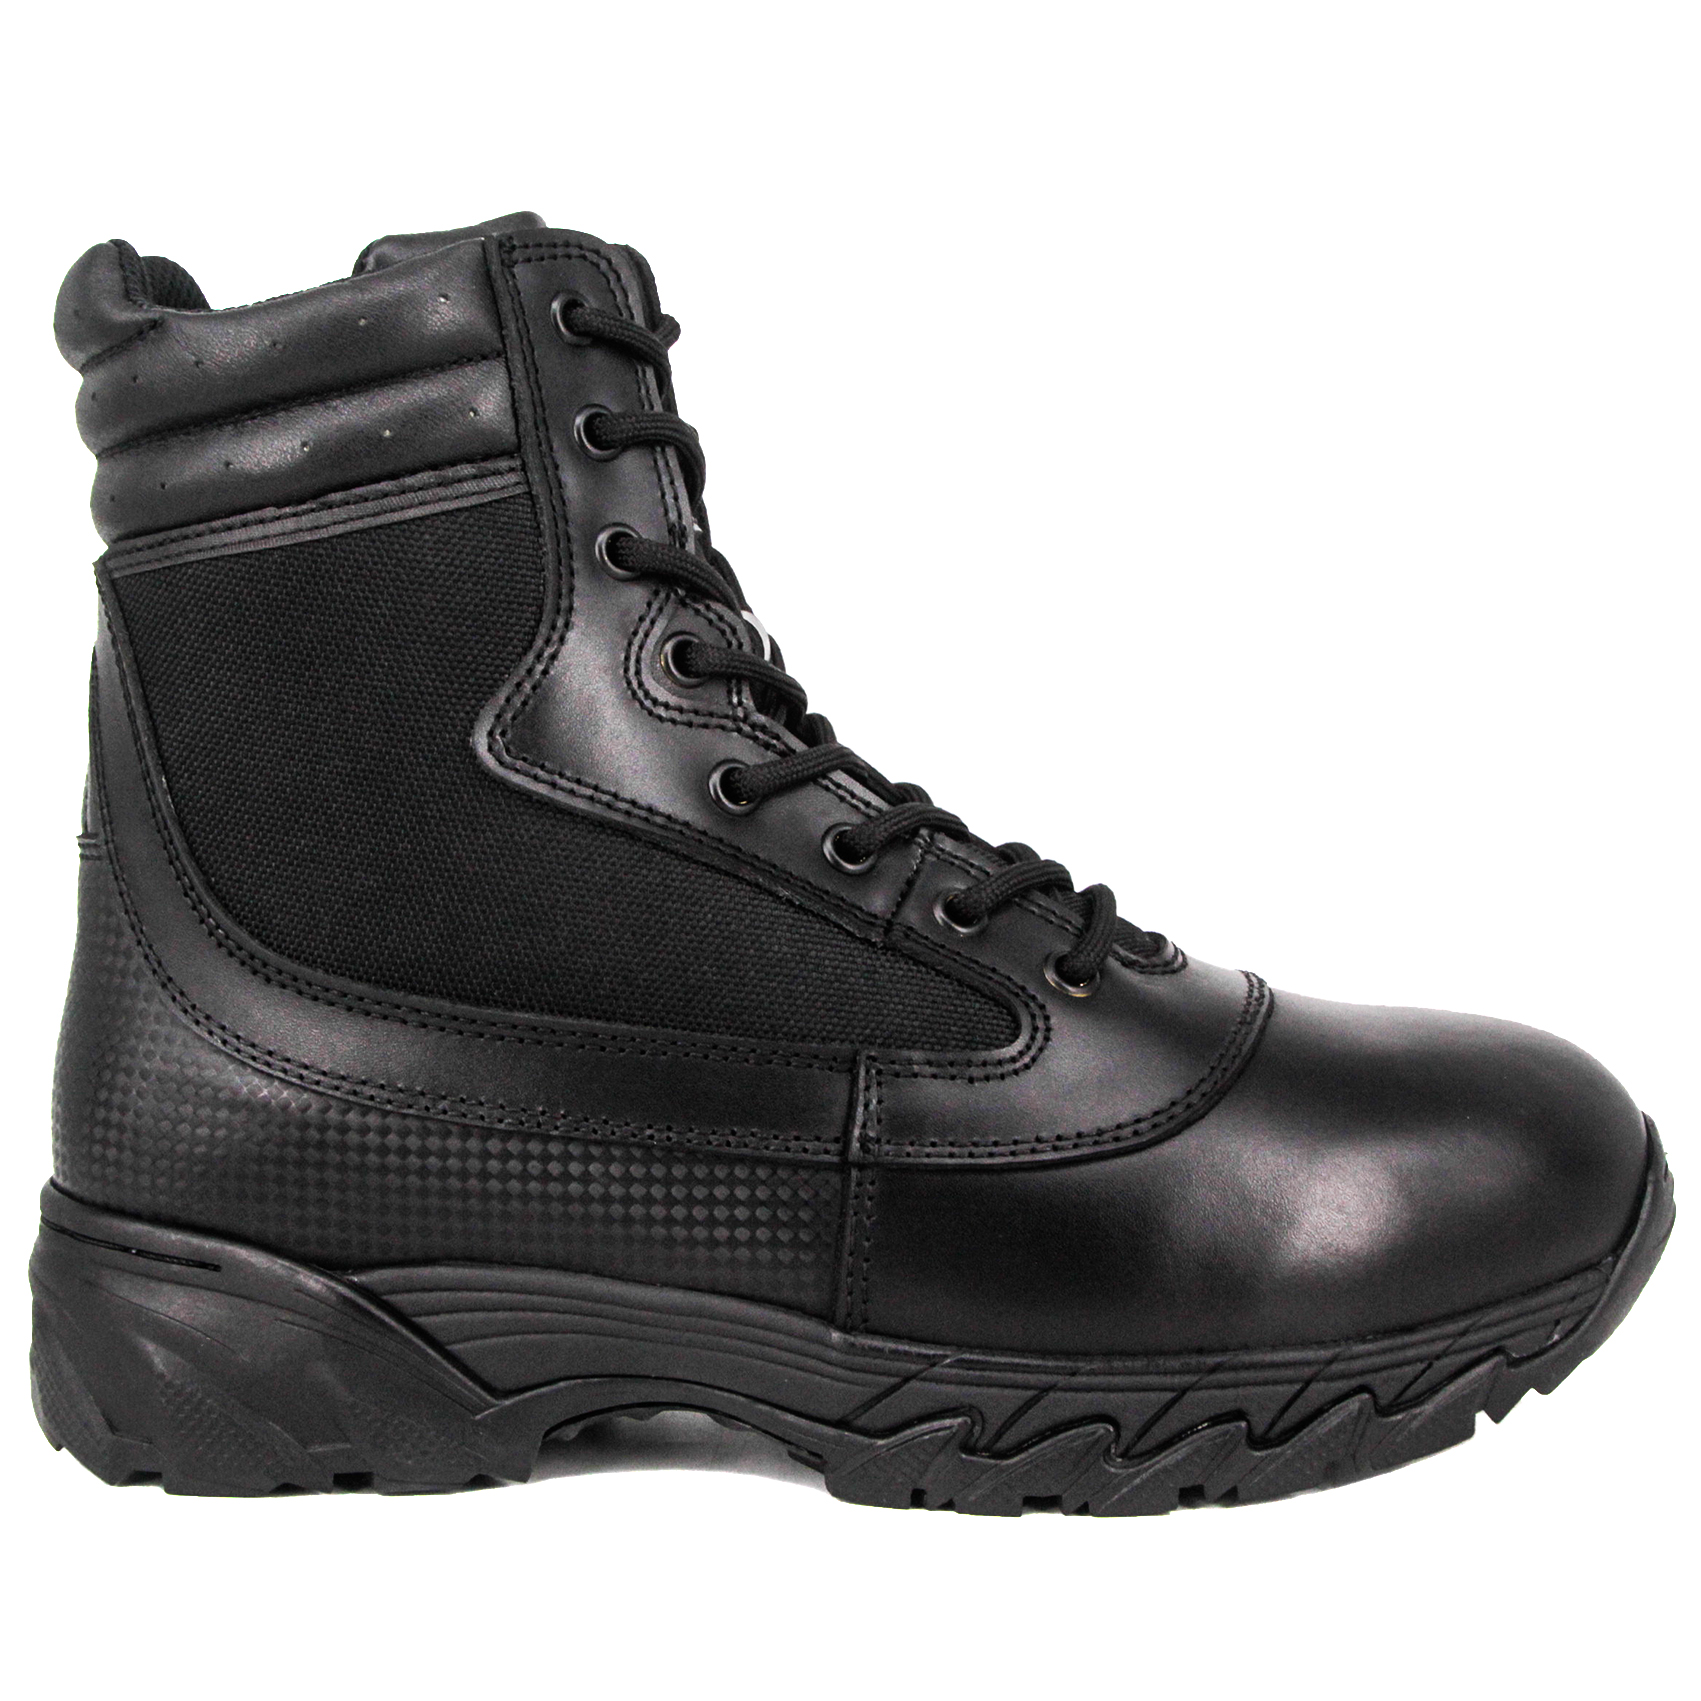 Këpucë taktike ushtarake të papërshkueshme nga uji me porosi 4238